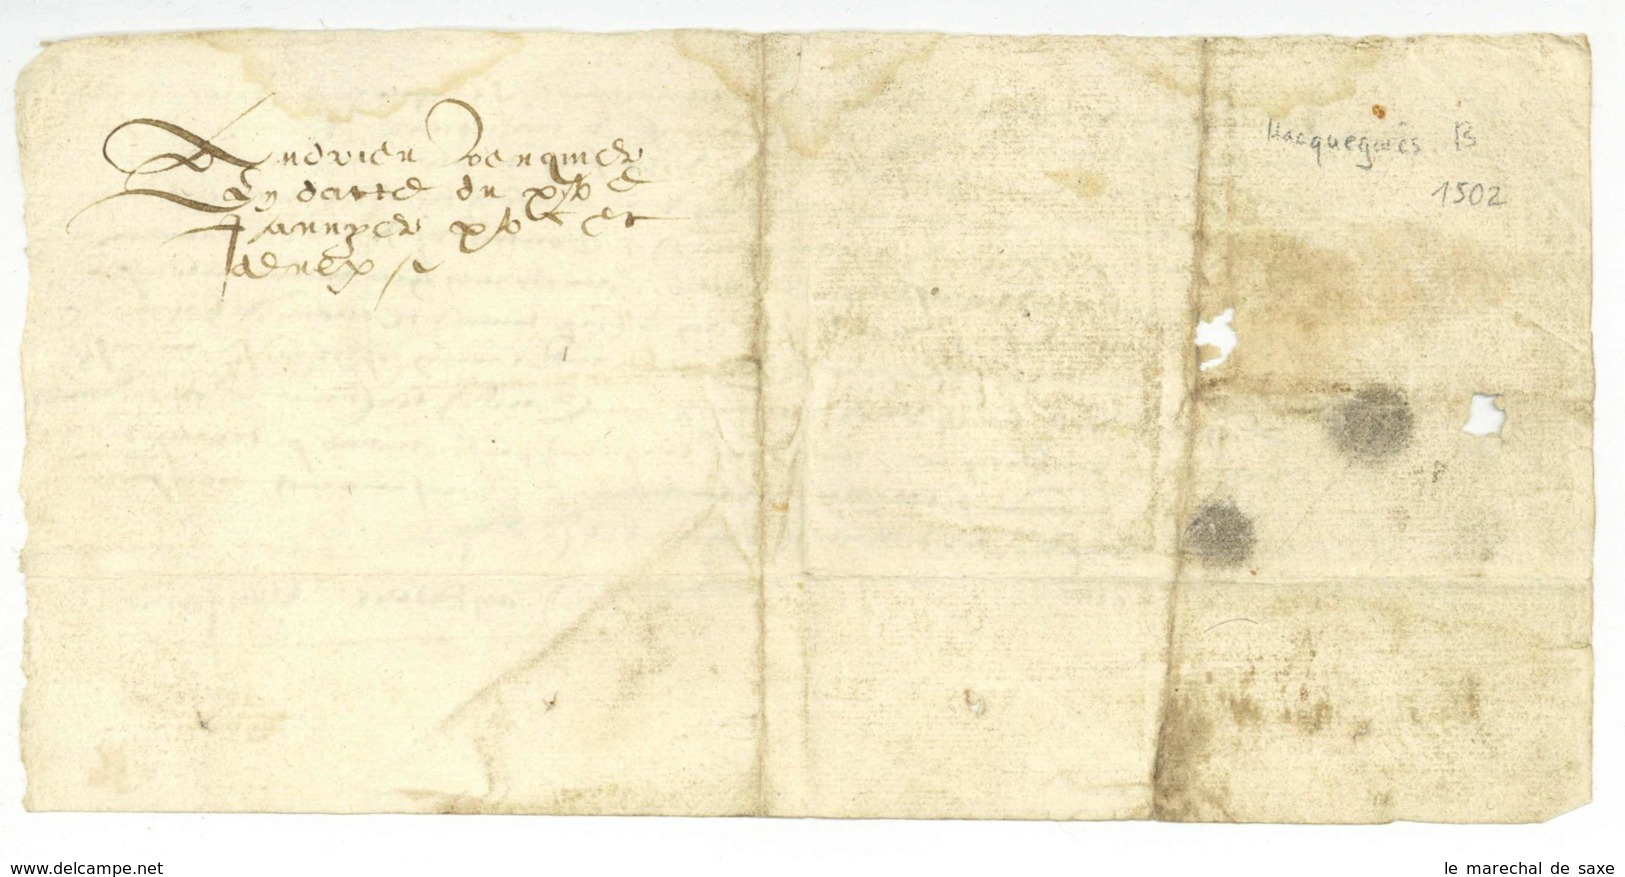 Hacquegnies ATH Belgique 1502 Foy Et Hommage Andrieu Venquiere A M De TRAZEGNIES - Manuscripten